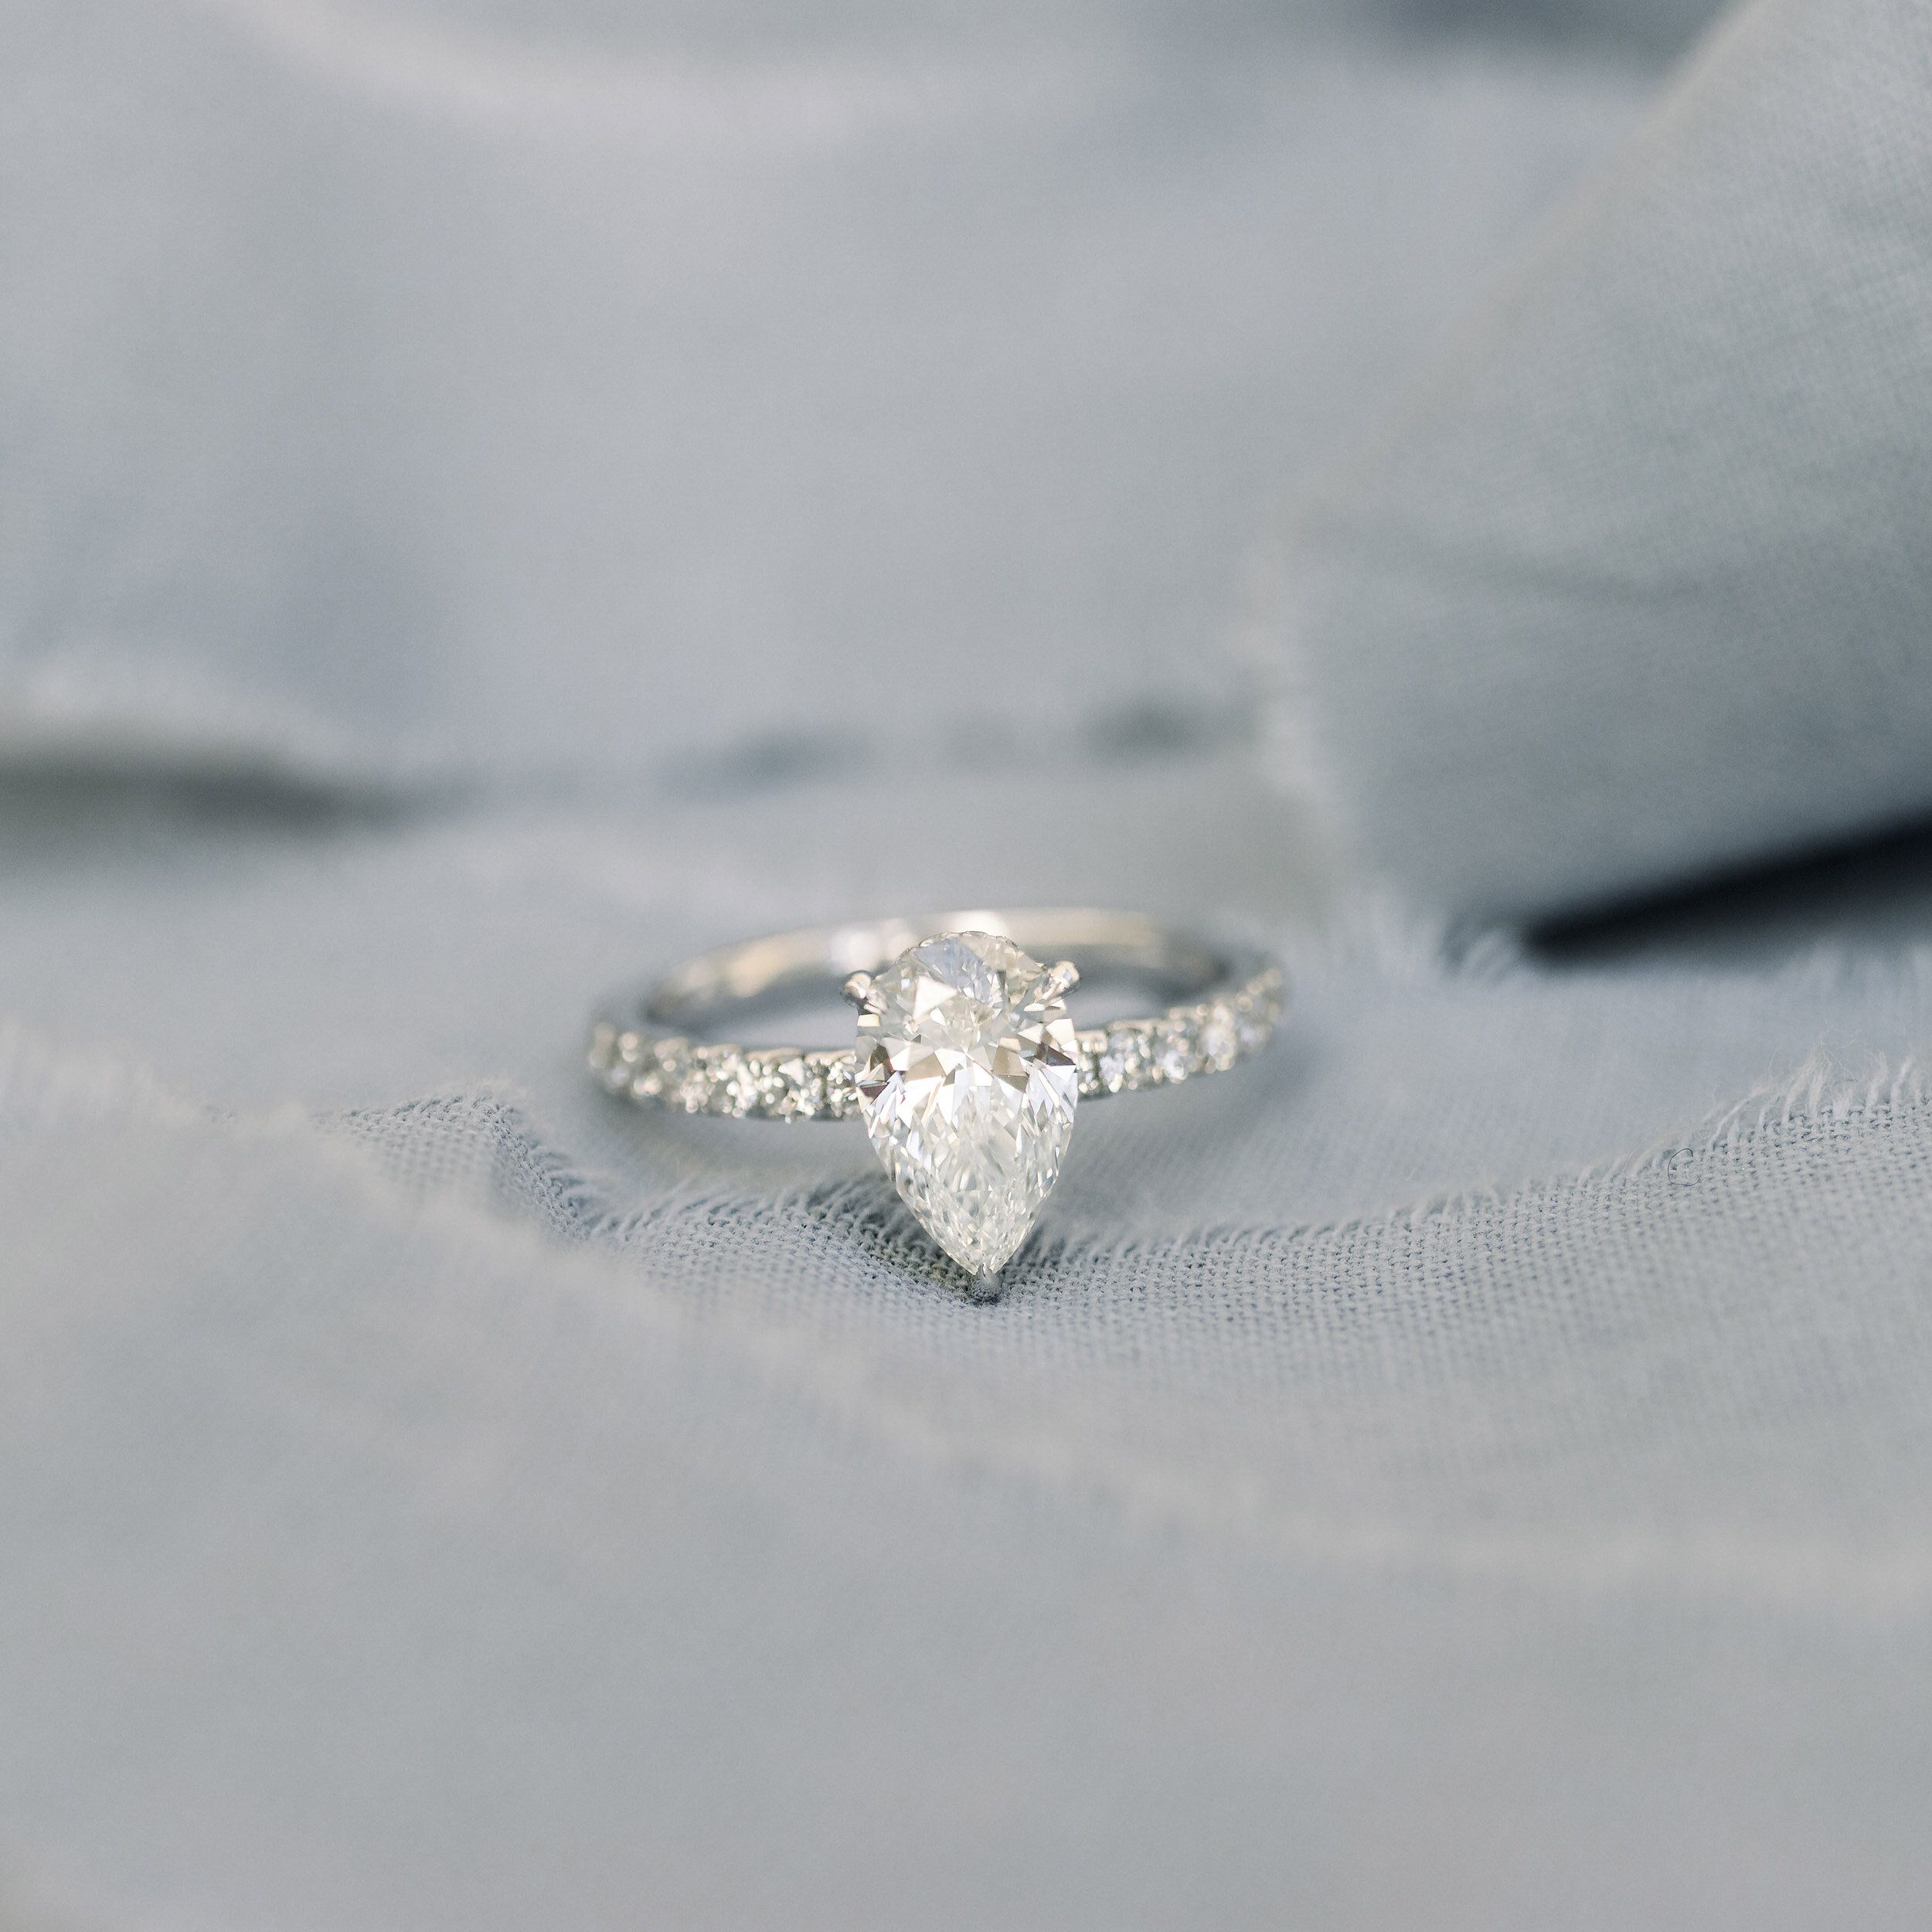 Pear Petite Pavé Setting | Custom Lab Diamond Engagement Ring For Petite Pear Shape Diamond Rings With Pave (View 7 of 25)